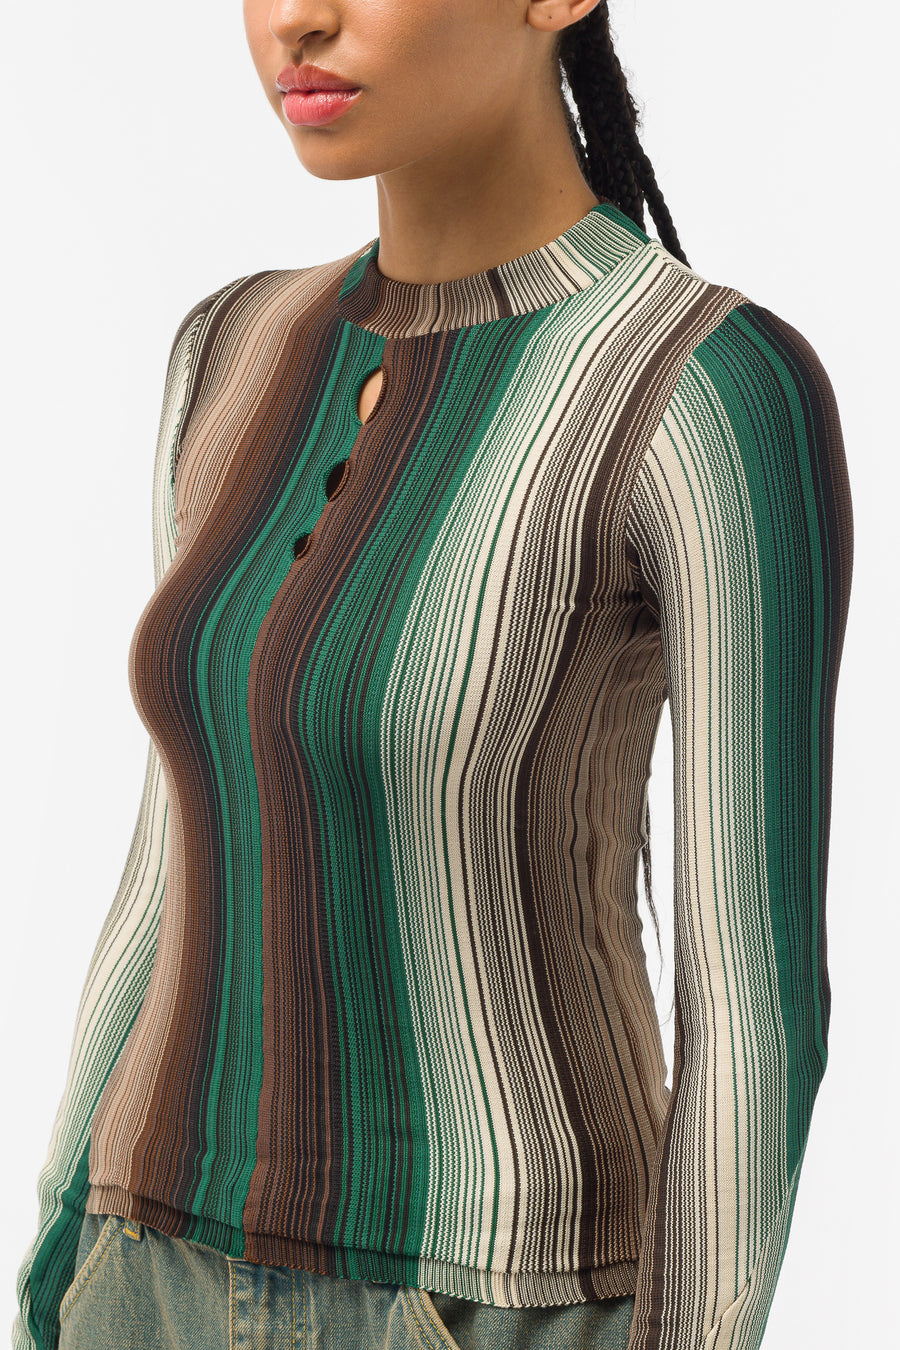 Anne Isabella - Women's Fade Stripe Long Sleeve Knit Top in Brown